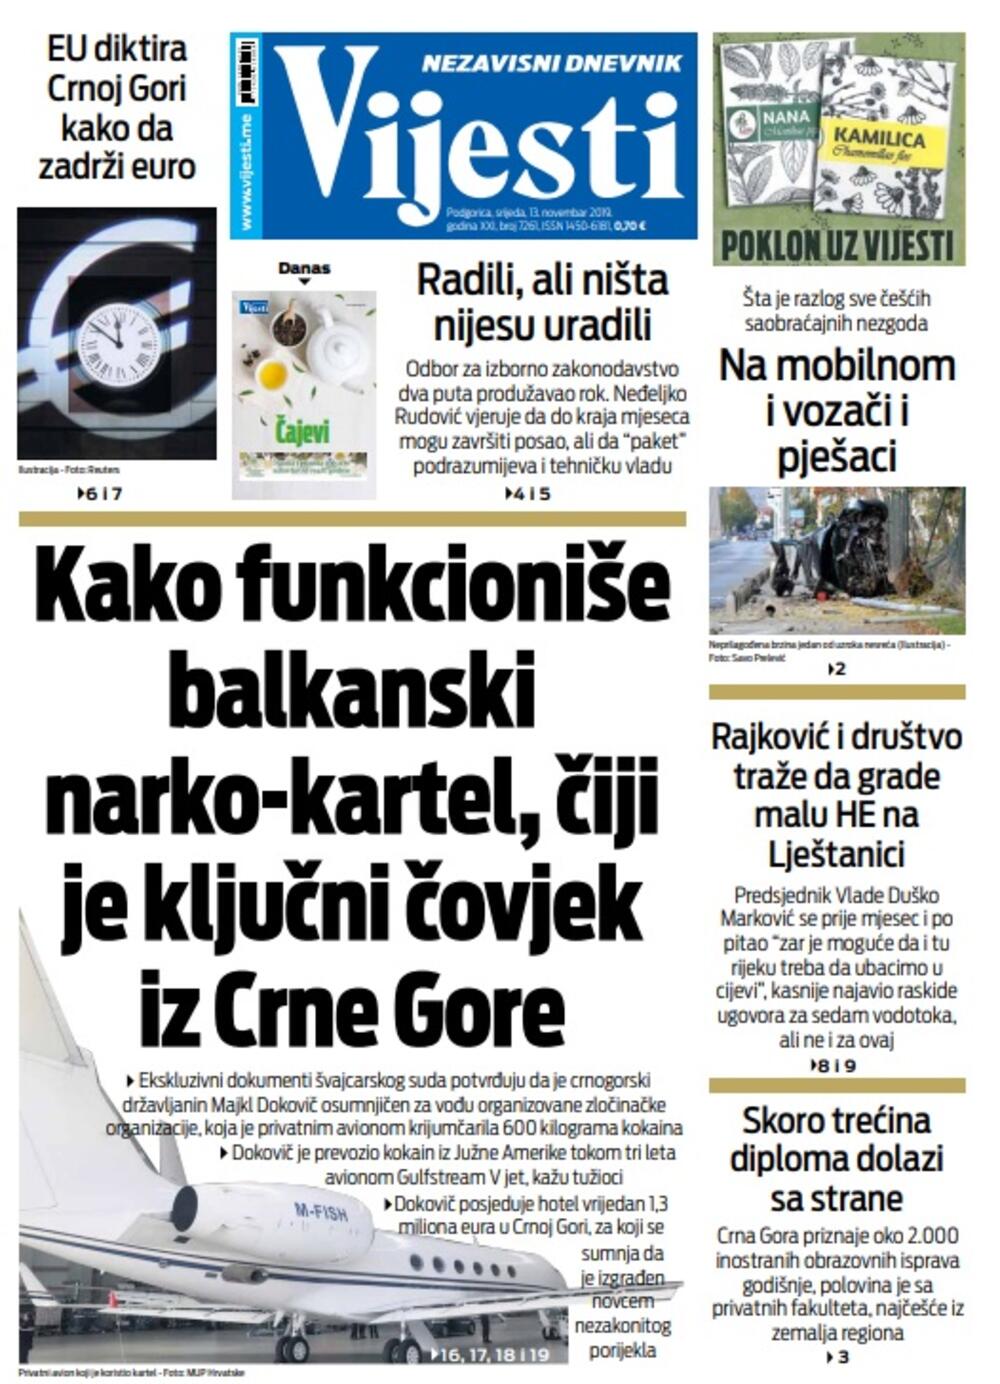 Naslovna strana "Vijesti" za 13. novembar 2019.